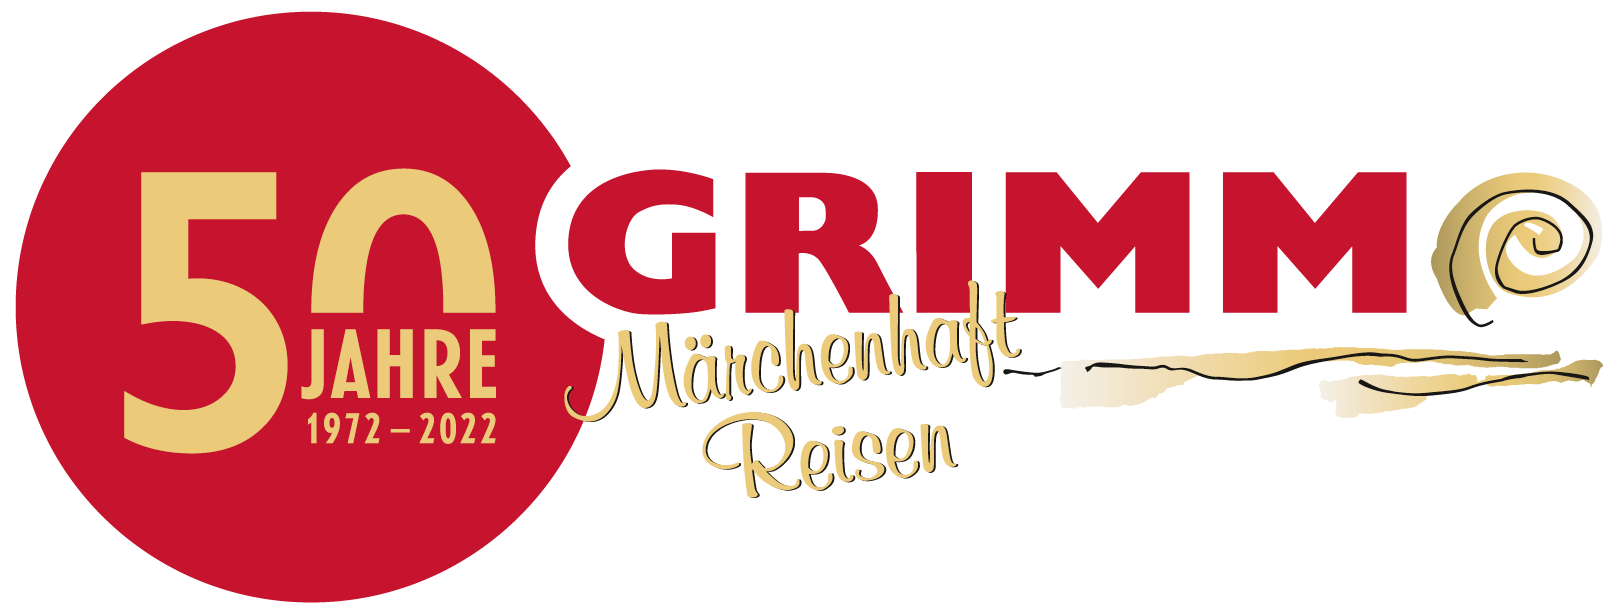 GRIMM Busreisen Logo zum 50- Jährigen Jubiläum